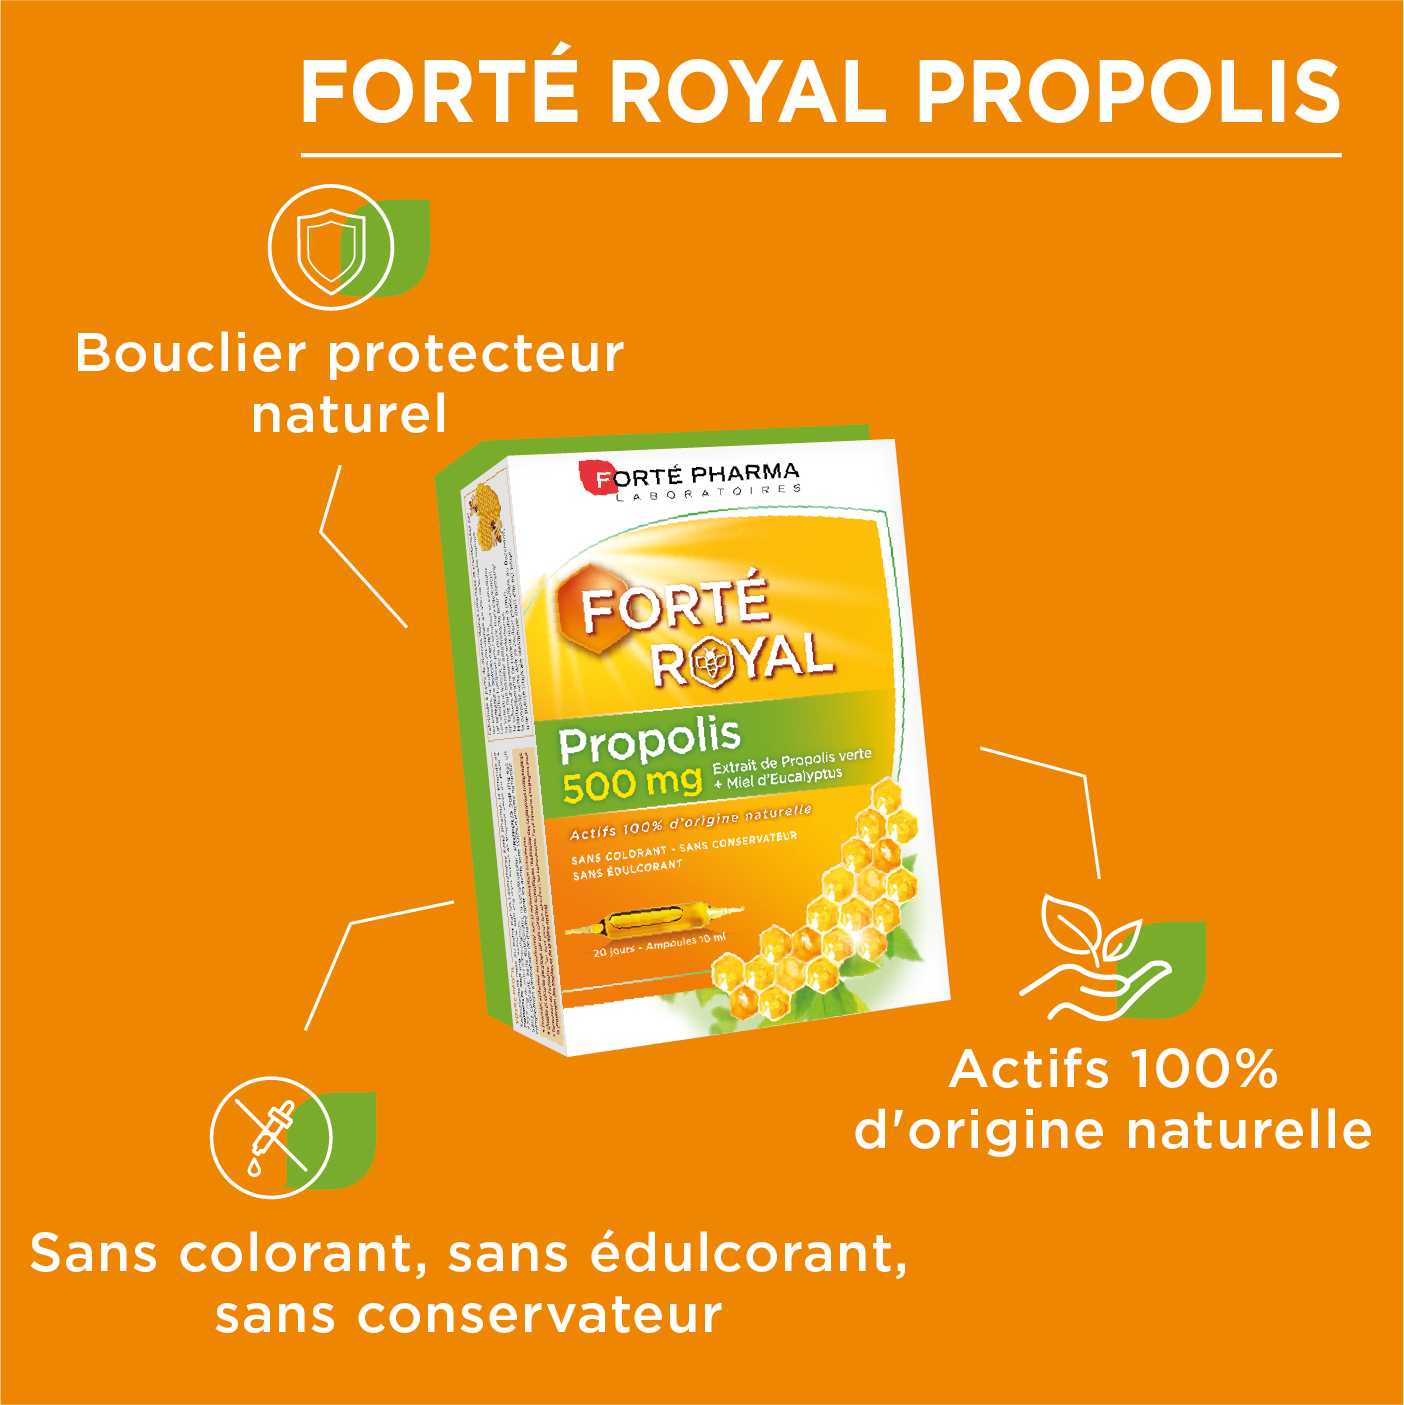 Forte Pharma Forté Própolis Pack - Lifenatura